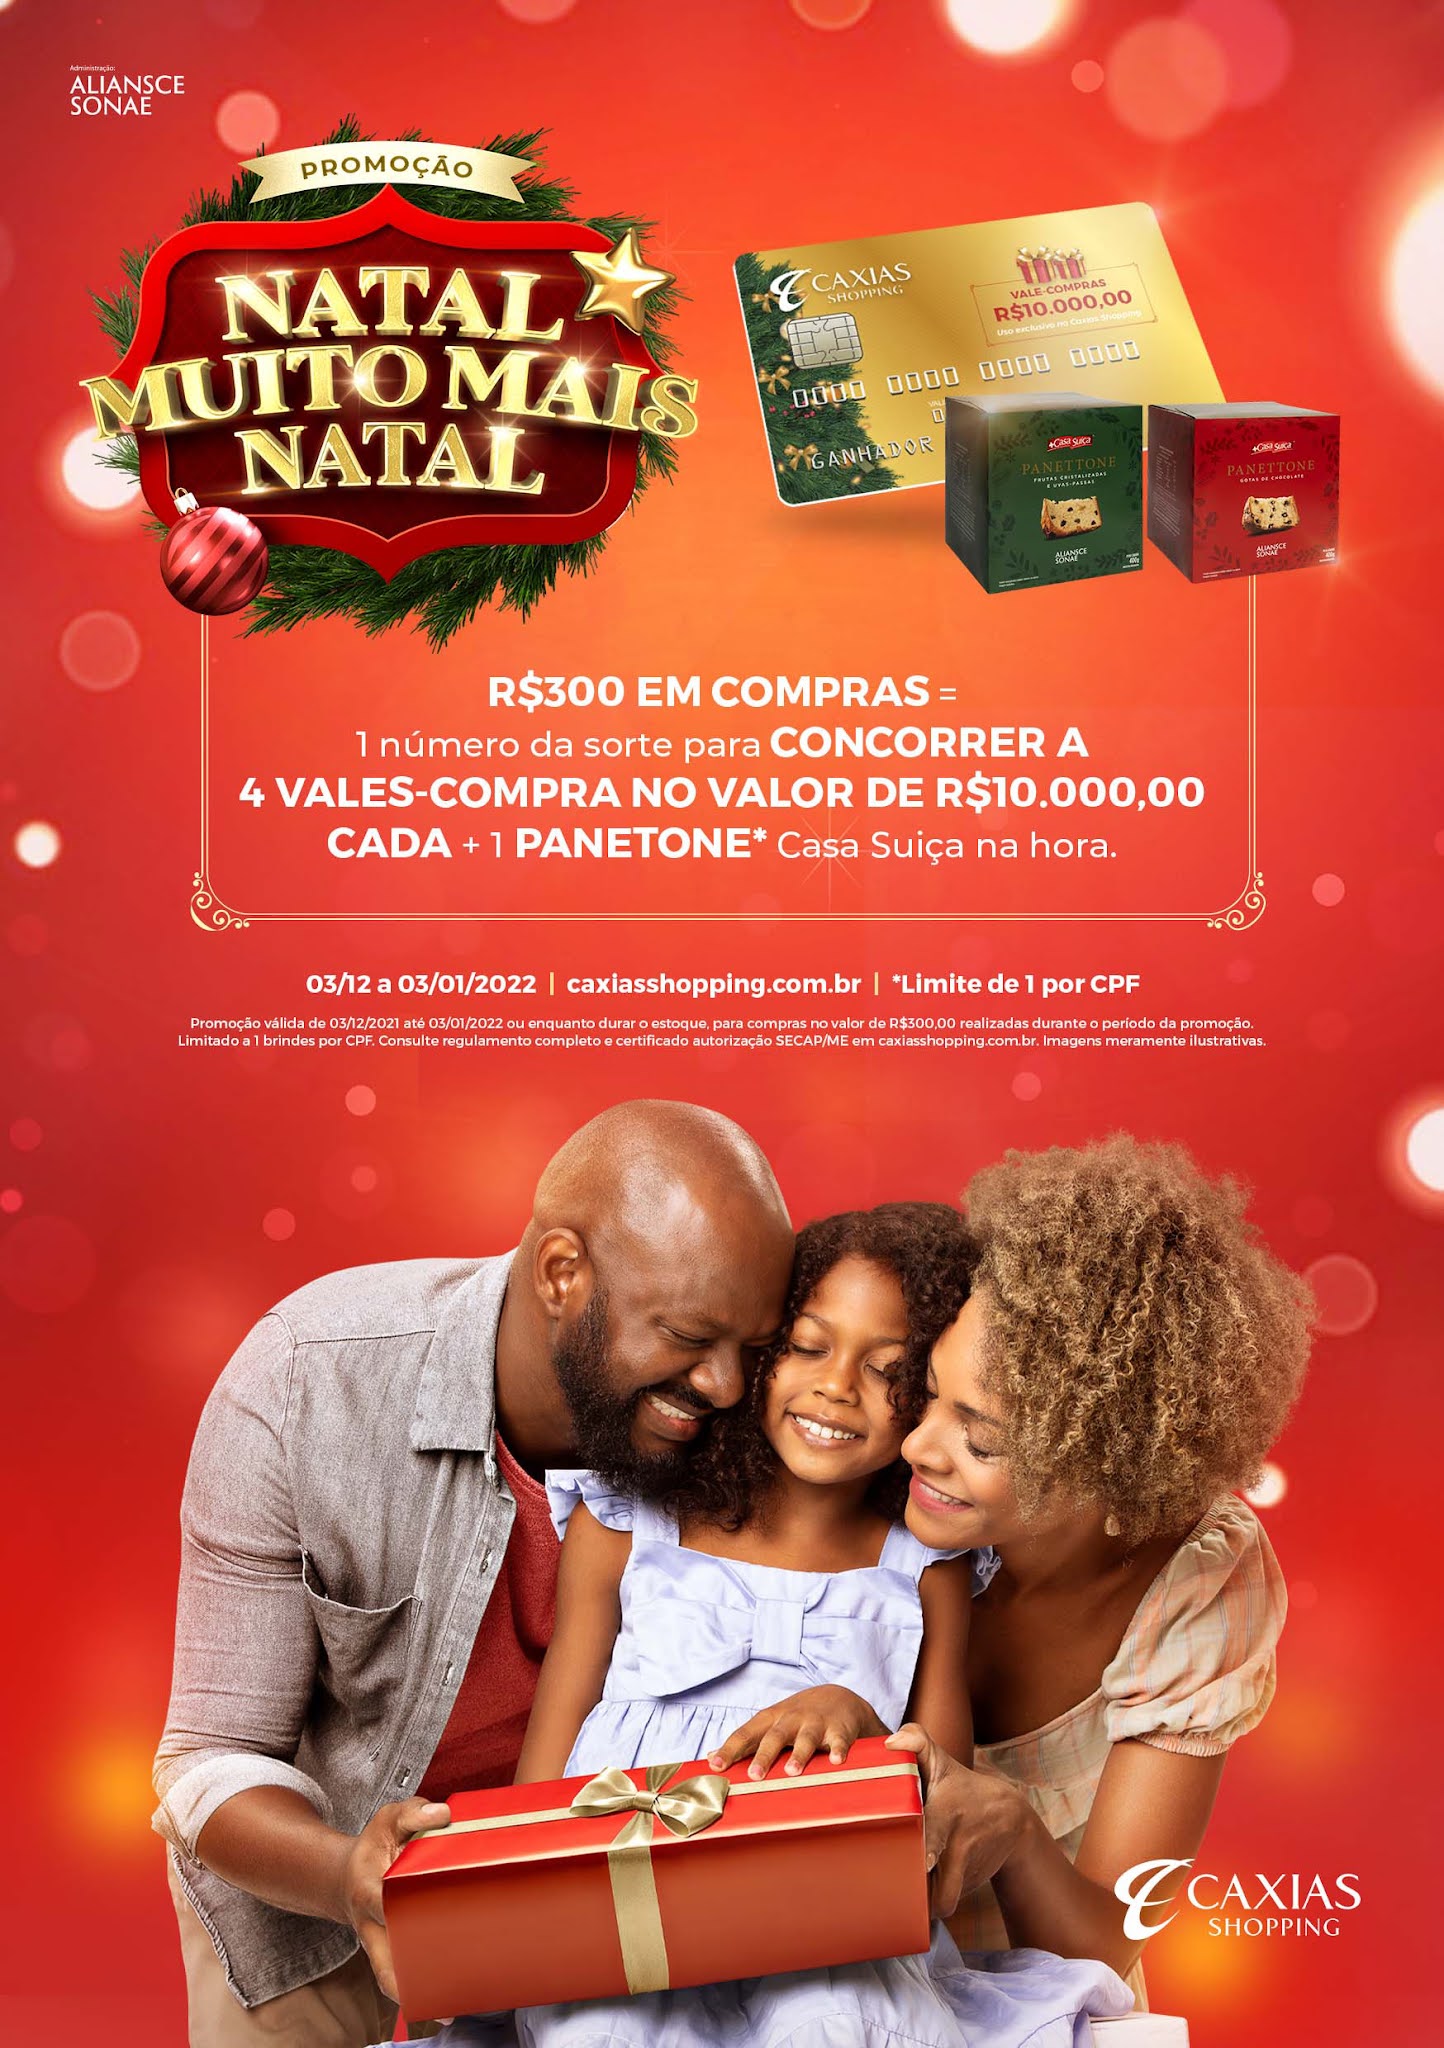 Caxias Shopping lança promoção de Natal com panetones e sorteio de  vales-compra - Shopping Center News